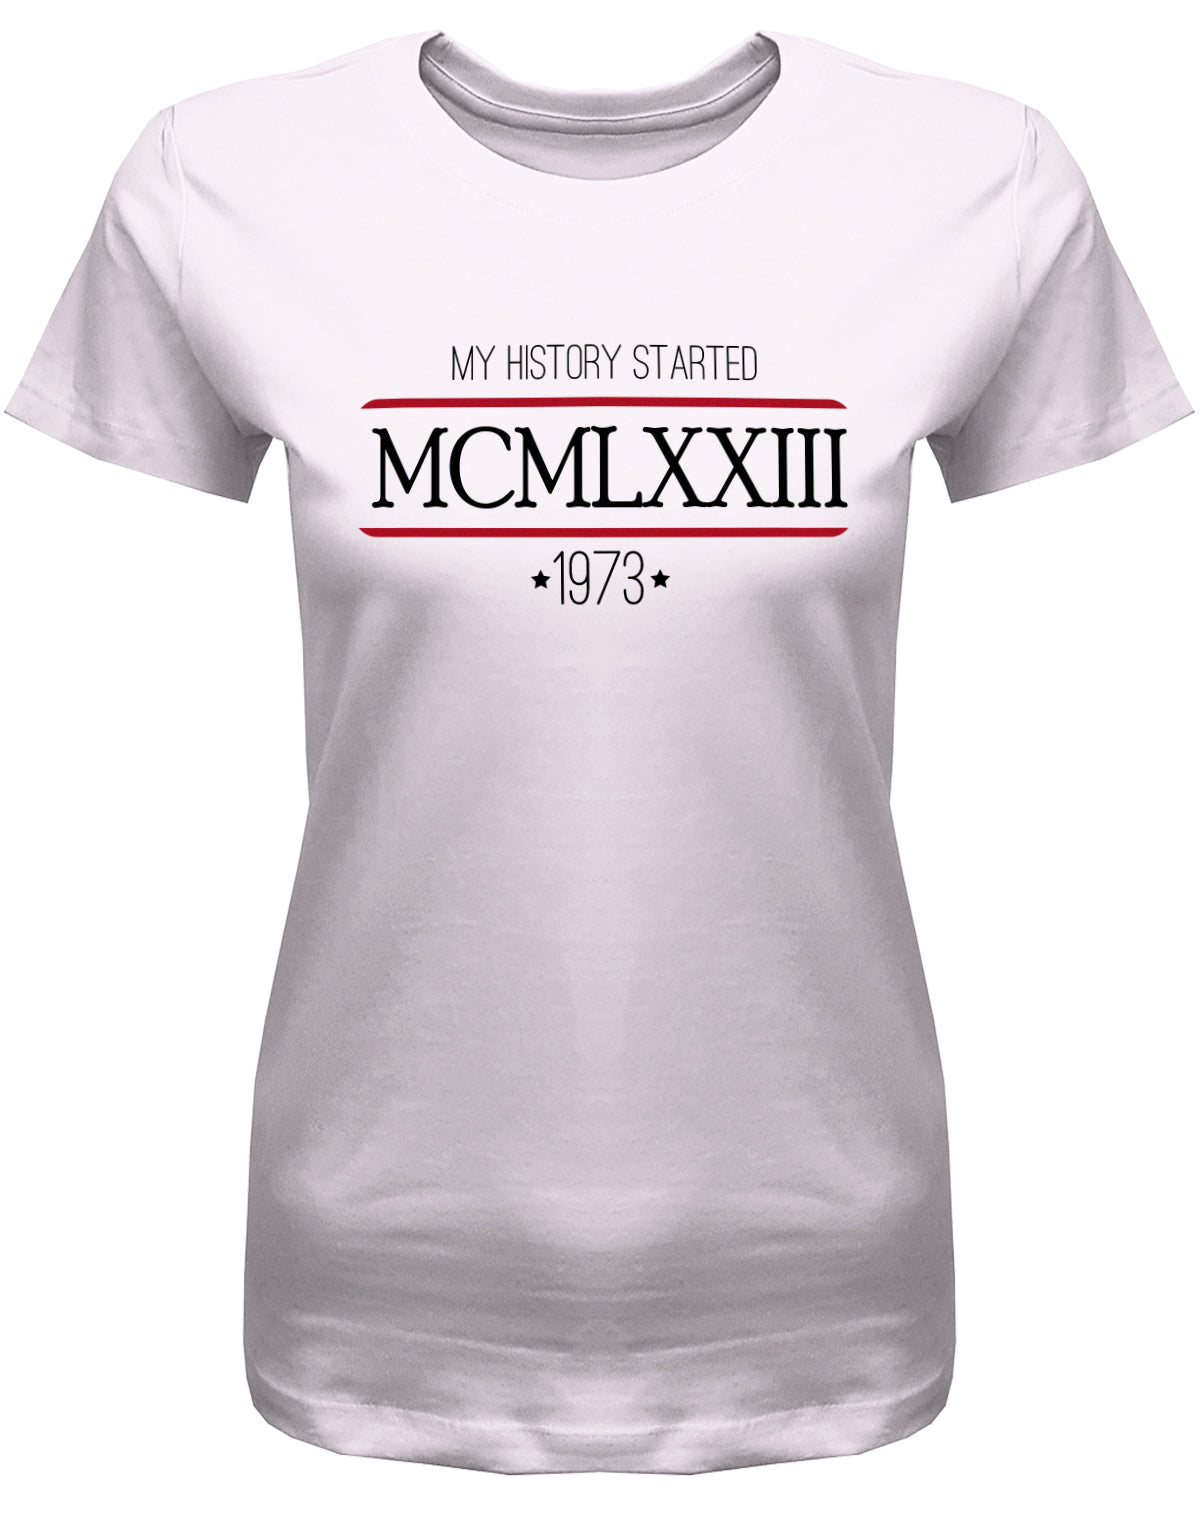 my history started 1973 - MCMLXXIII römische Zahlen - Jahrgang 1973 Geschenk Frauen Shirt